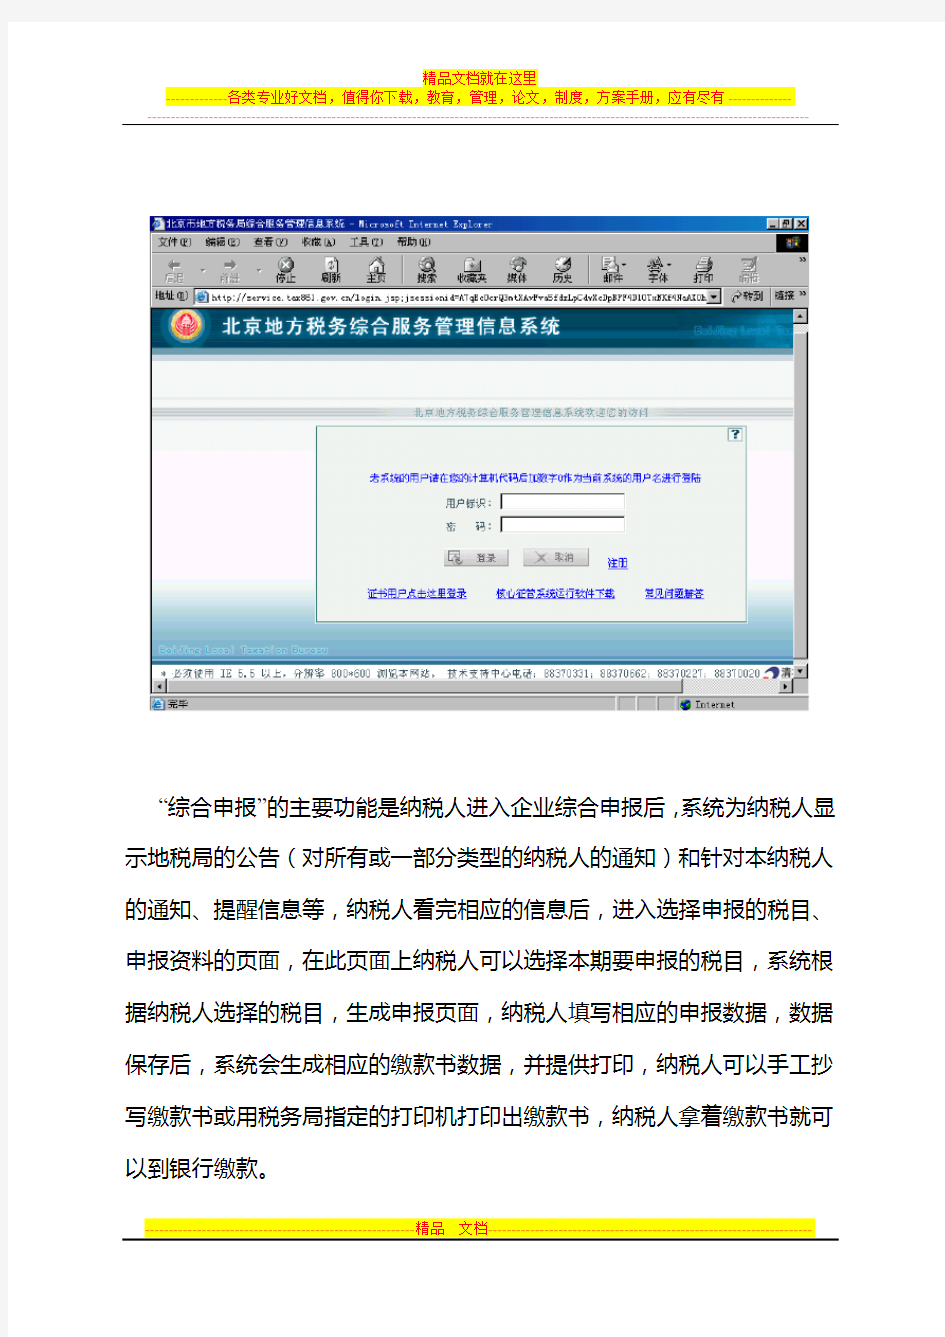 北京市地方税务局综合服务管理信息系统